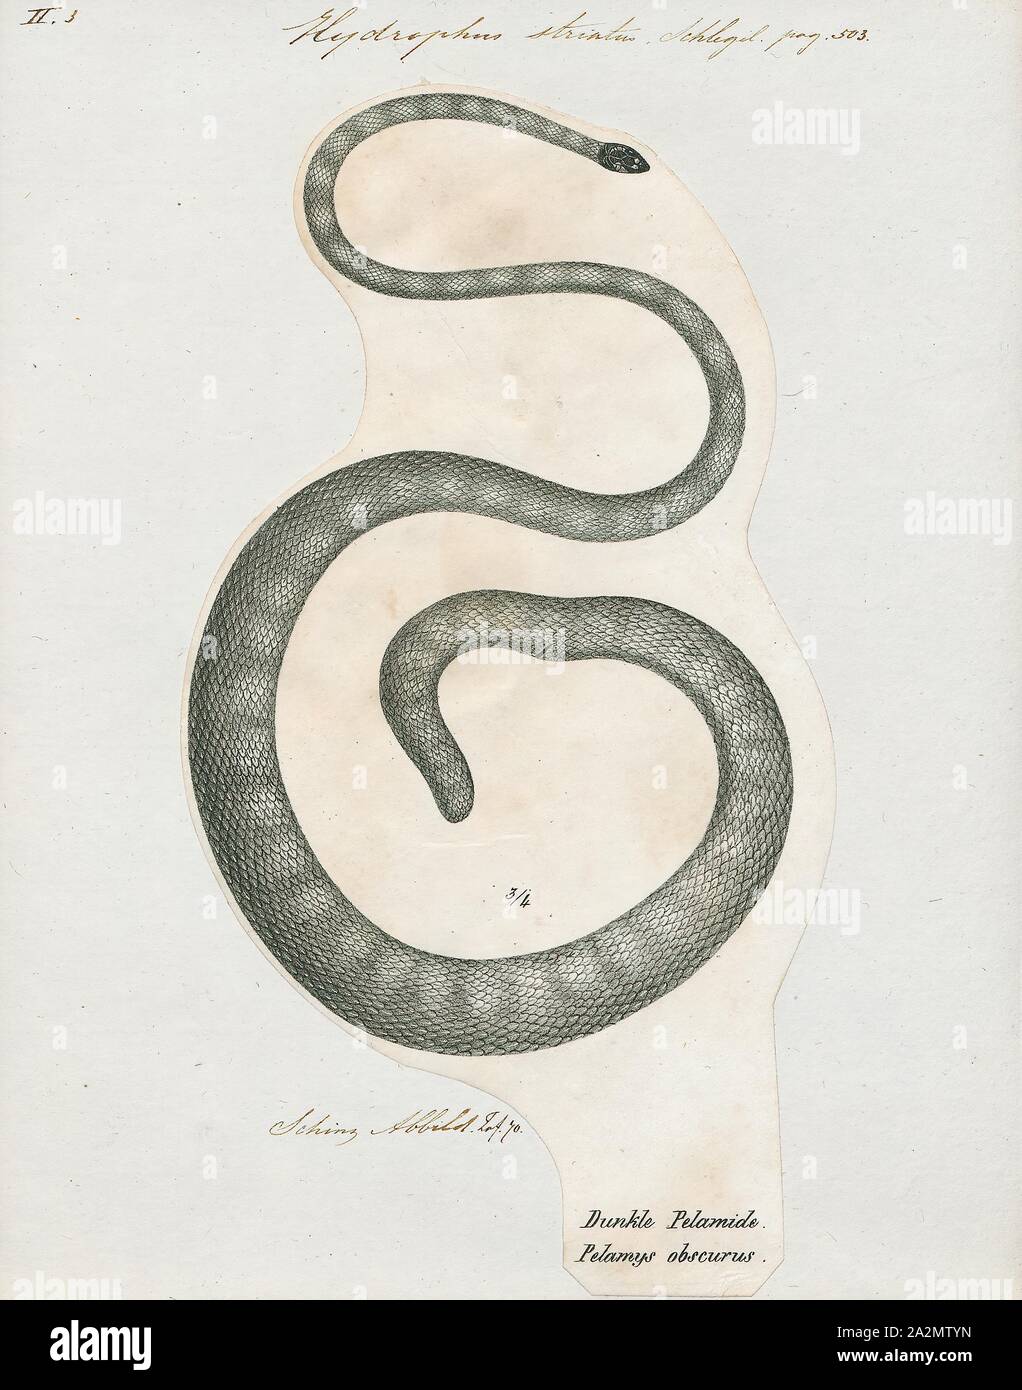 Hydrophis striatus, Drucken, Hydrophis ist eine Gattung der Seeschlangen. Sie sind in der Regel in Indo-Australian und Südostasiatischen Gewässern gefunden., 1700-1880 Stockfoto